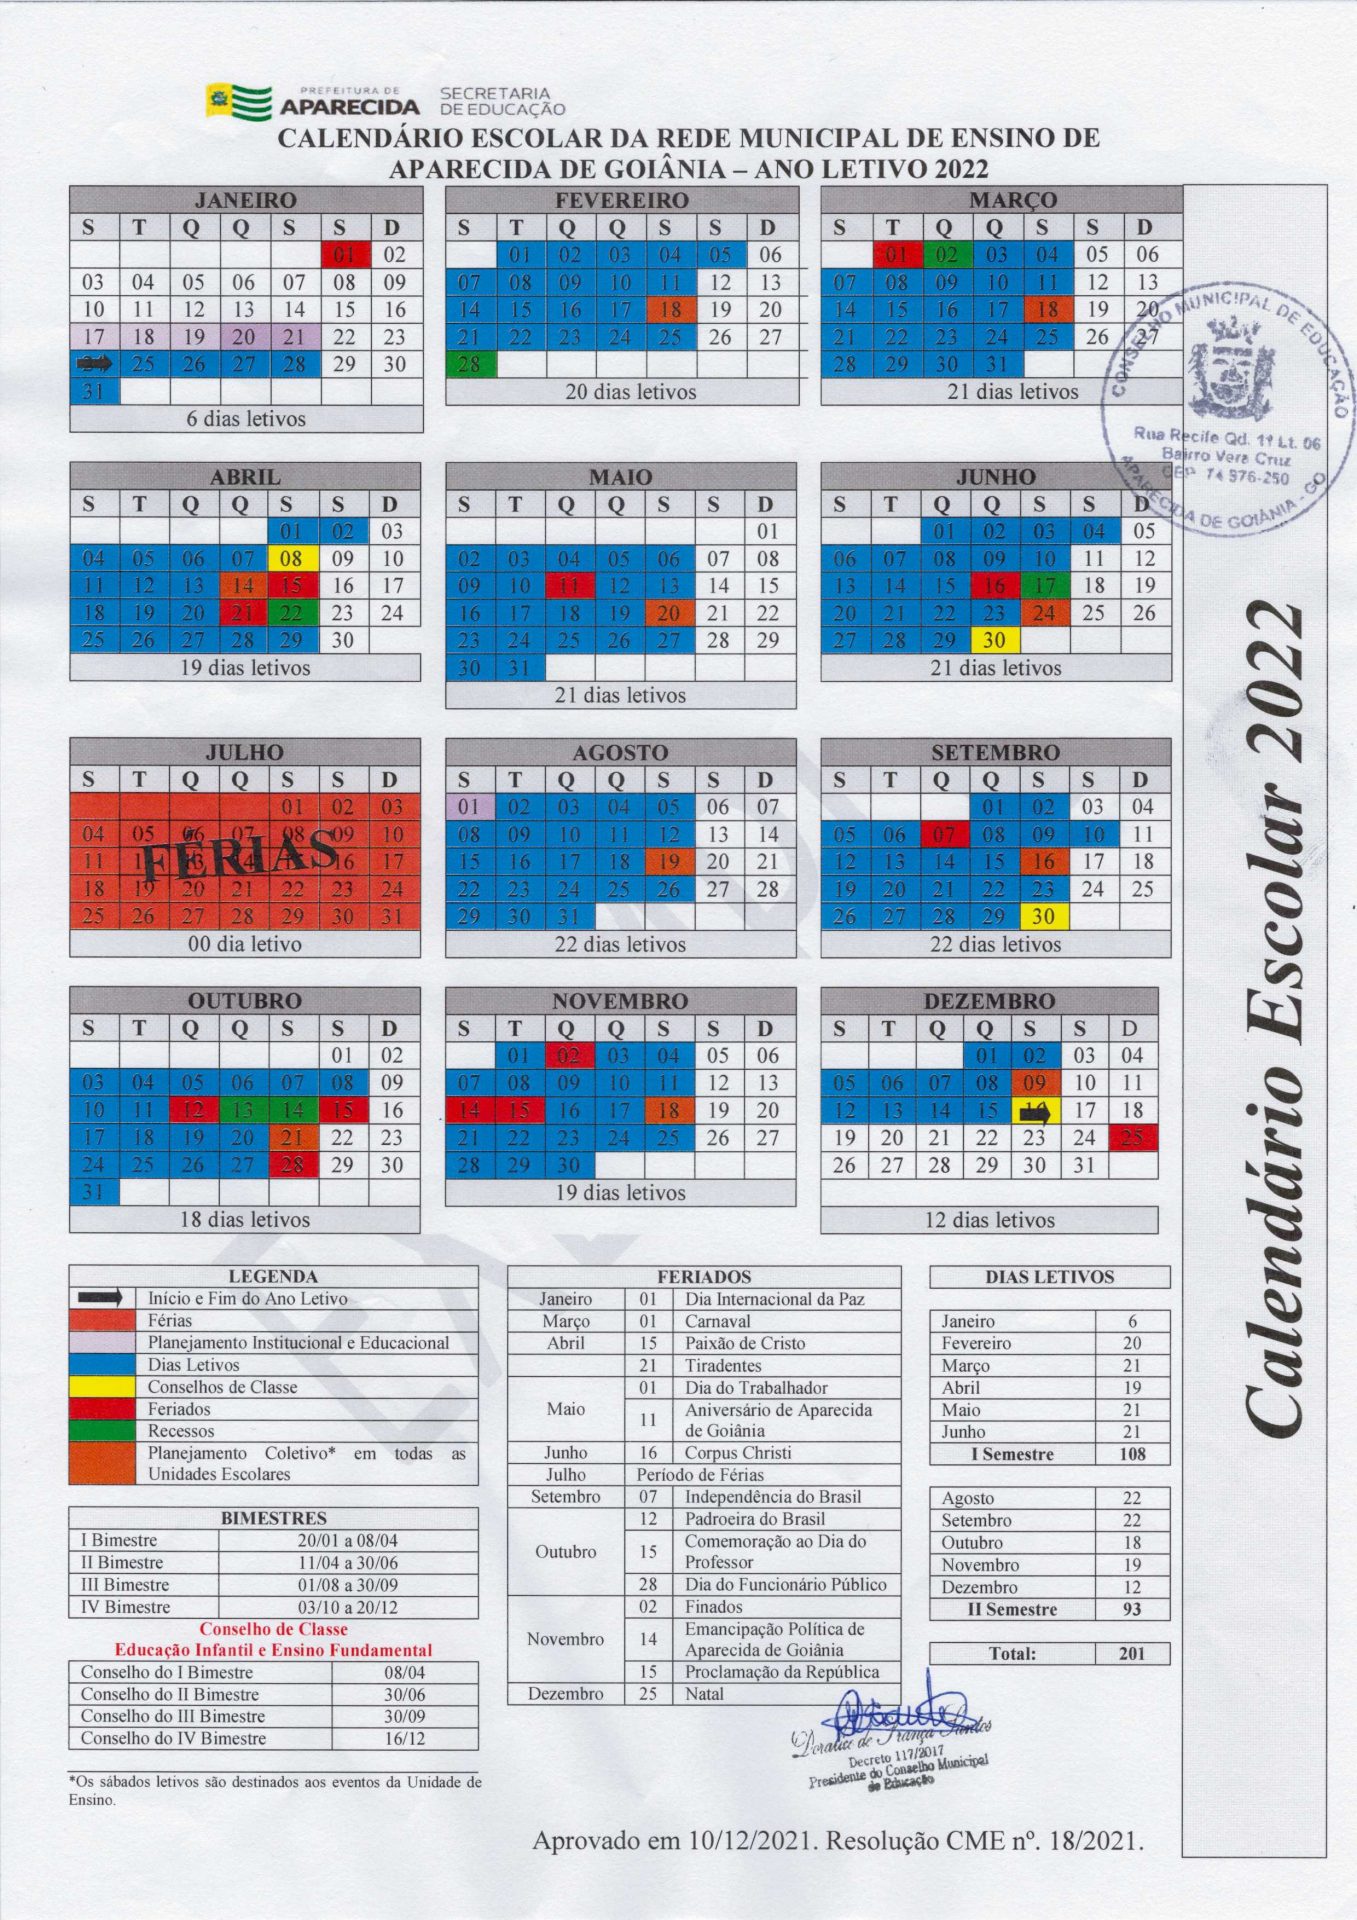 Calendário completo do ano letivo de 2022 na rede municipal de Educação de Aparecida de Goiânia | Foto: Reprodução